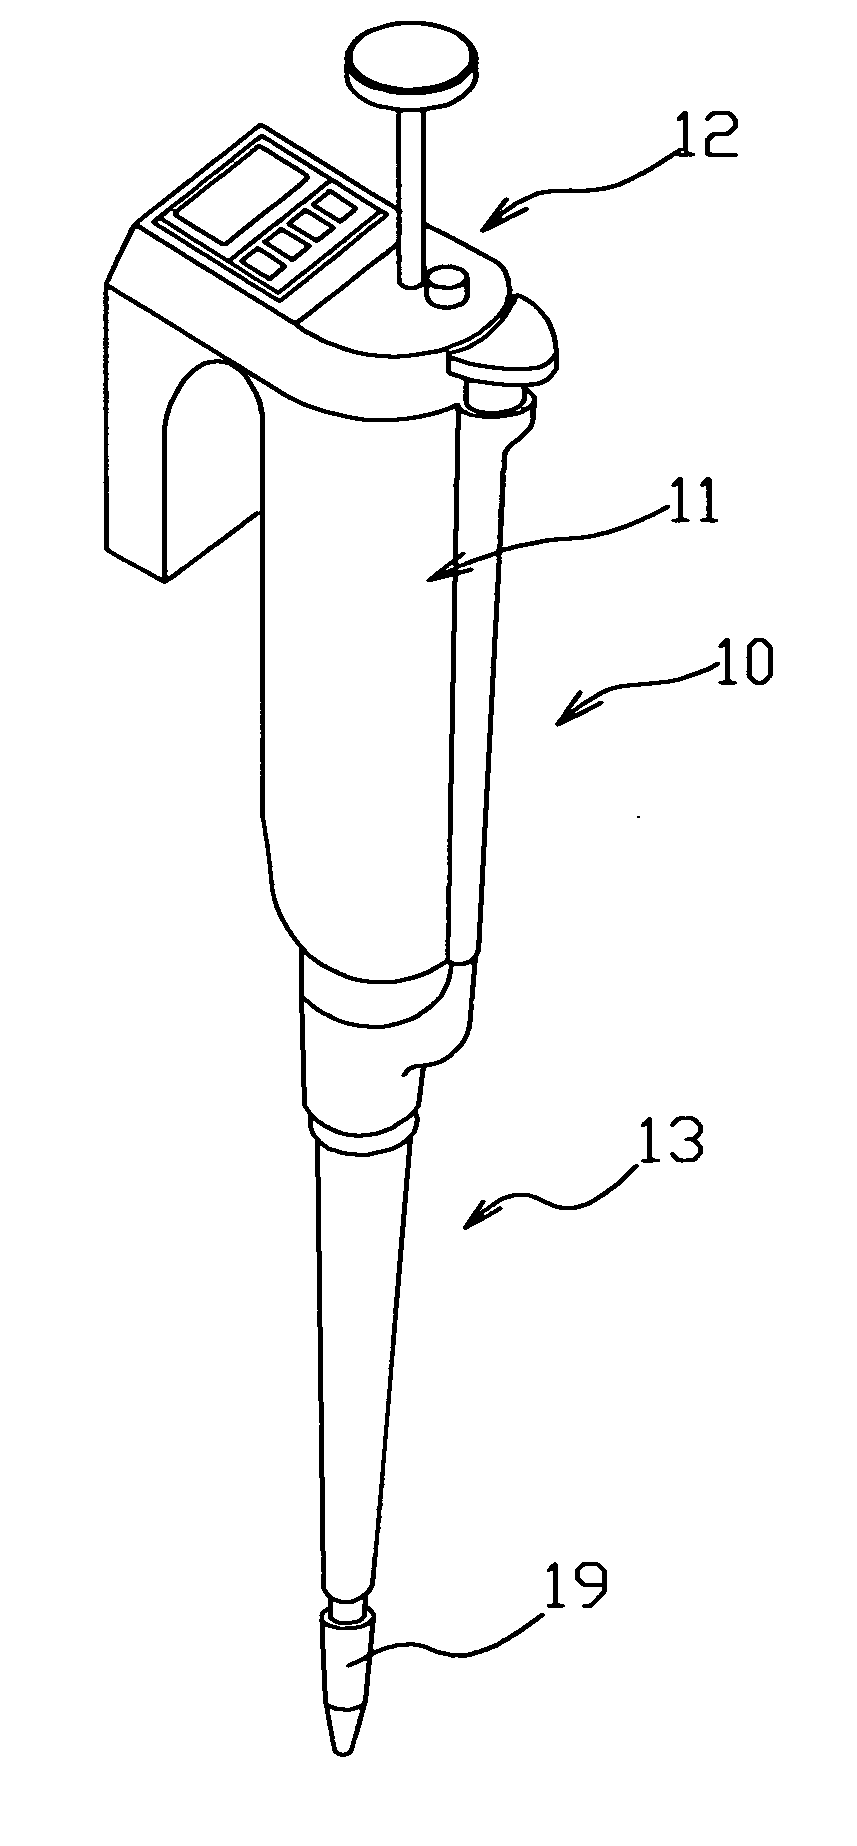 Micro pipette sensing device